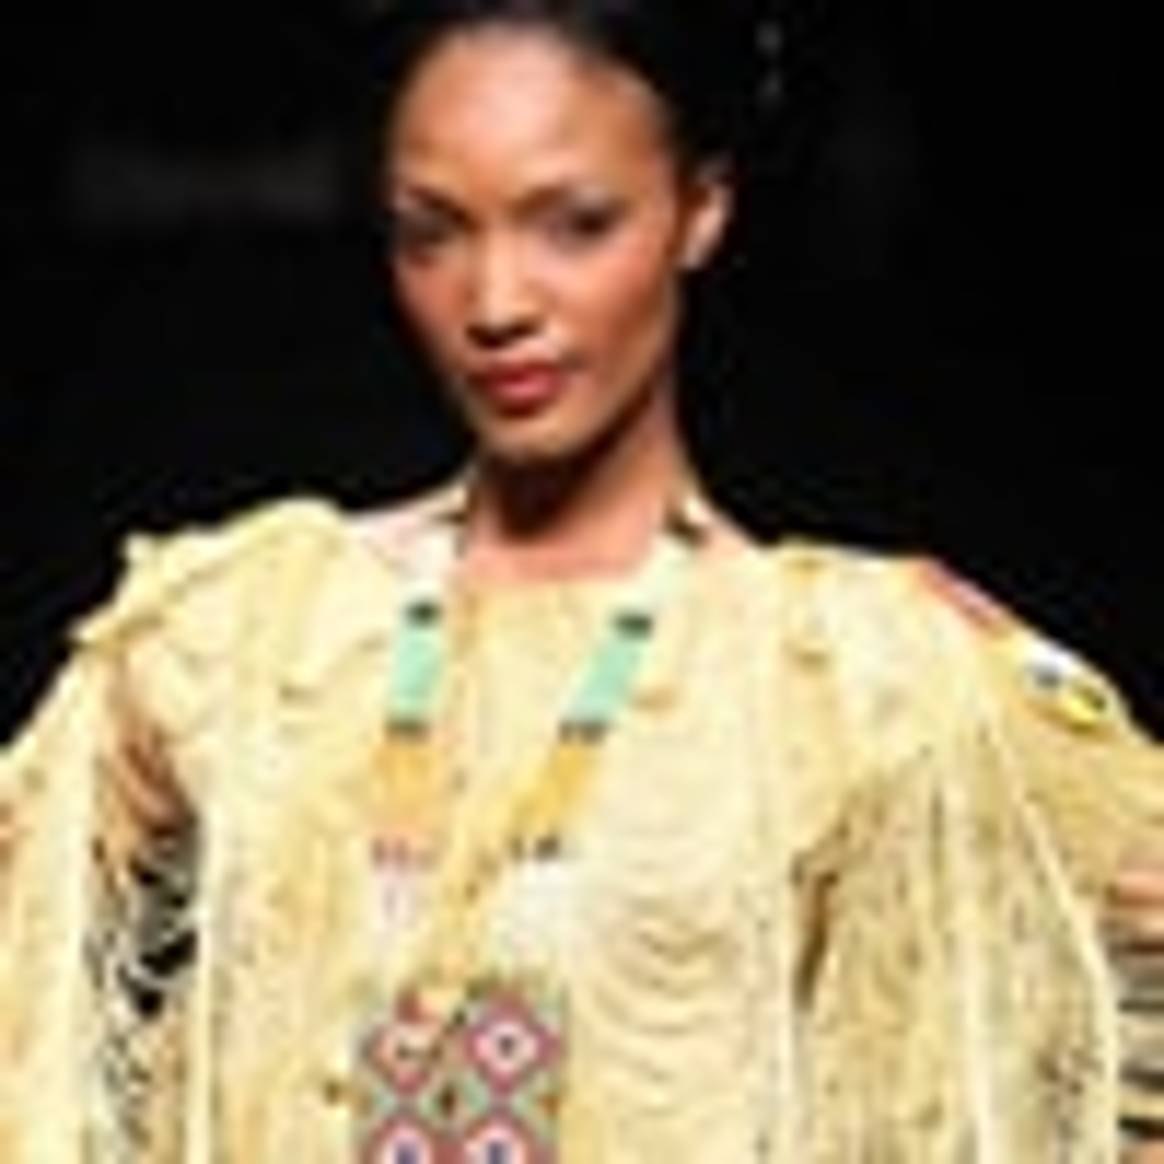 Arise Africa Fashion Week afgerond